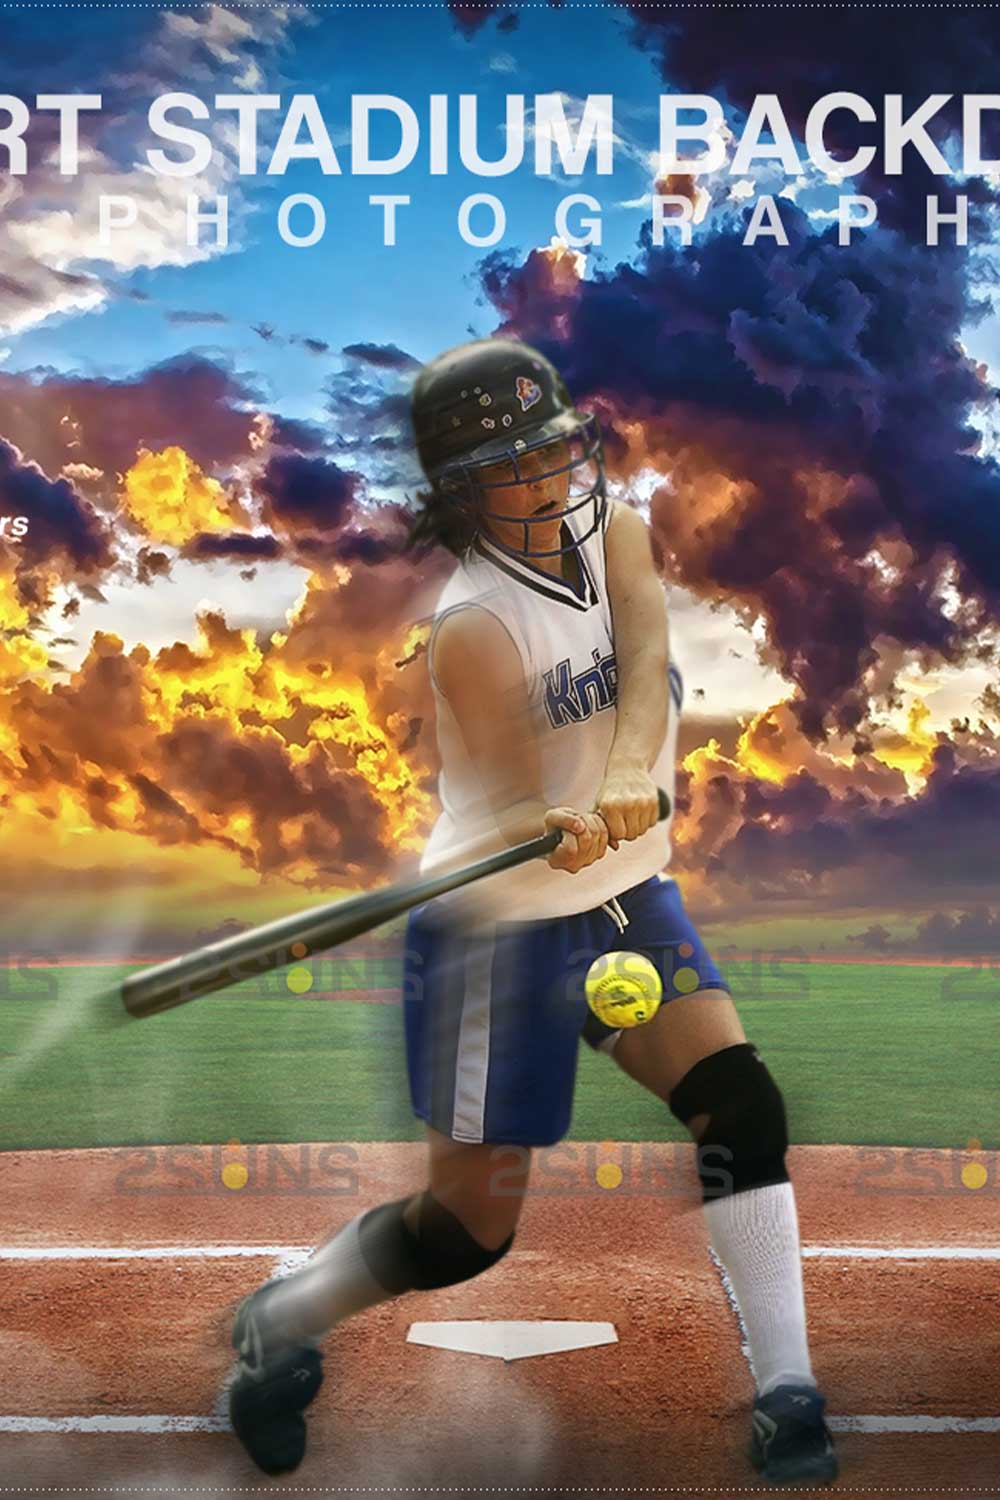 Amazing Softball Backdrop Sports Digital Background Pinterest Image.